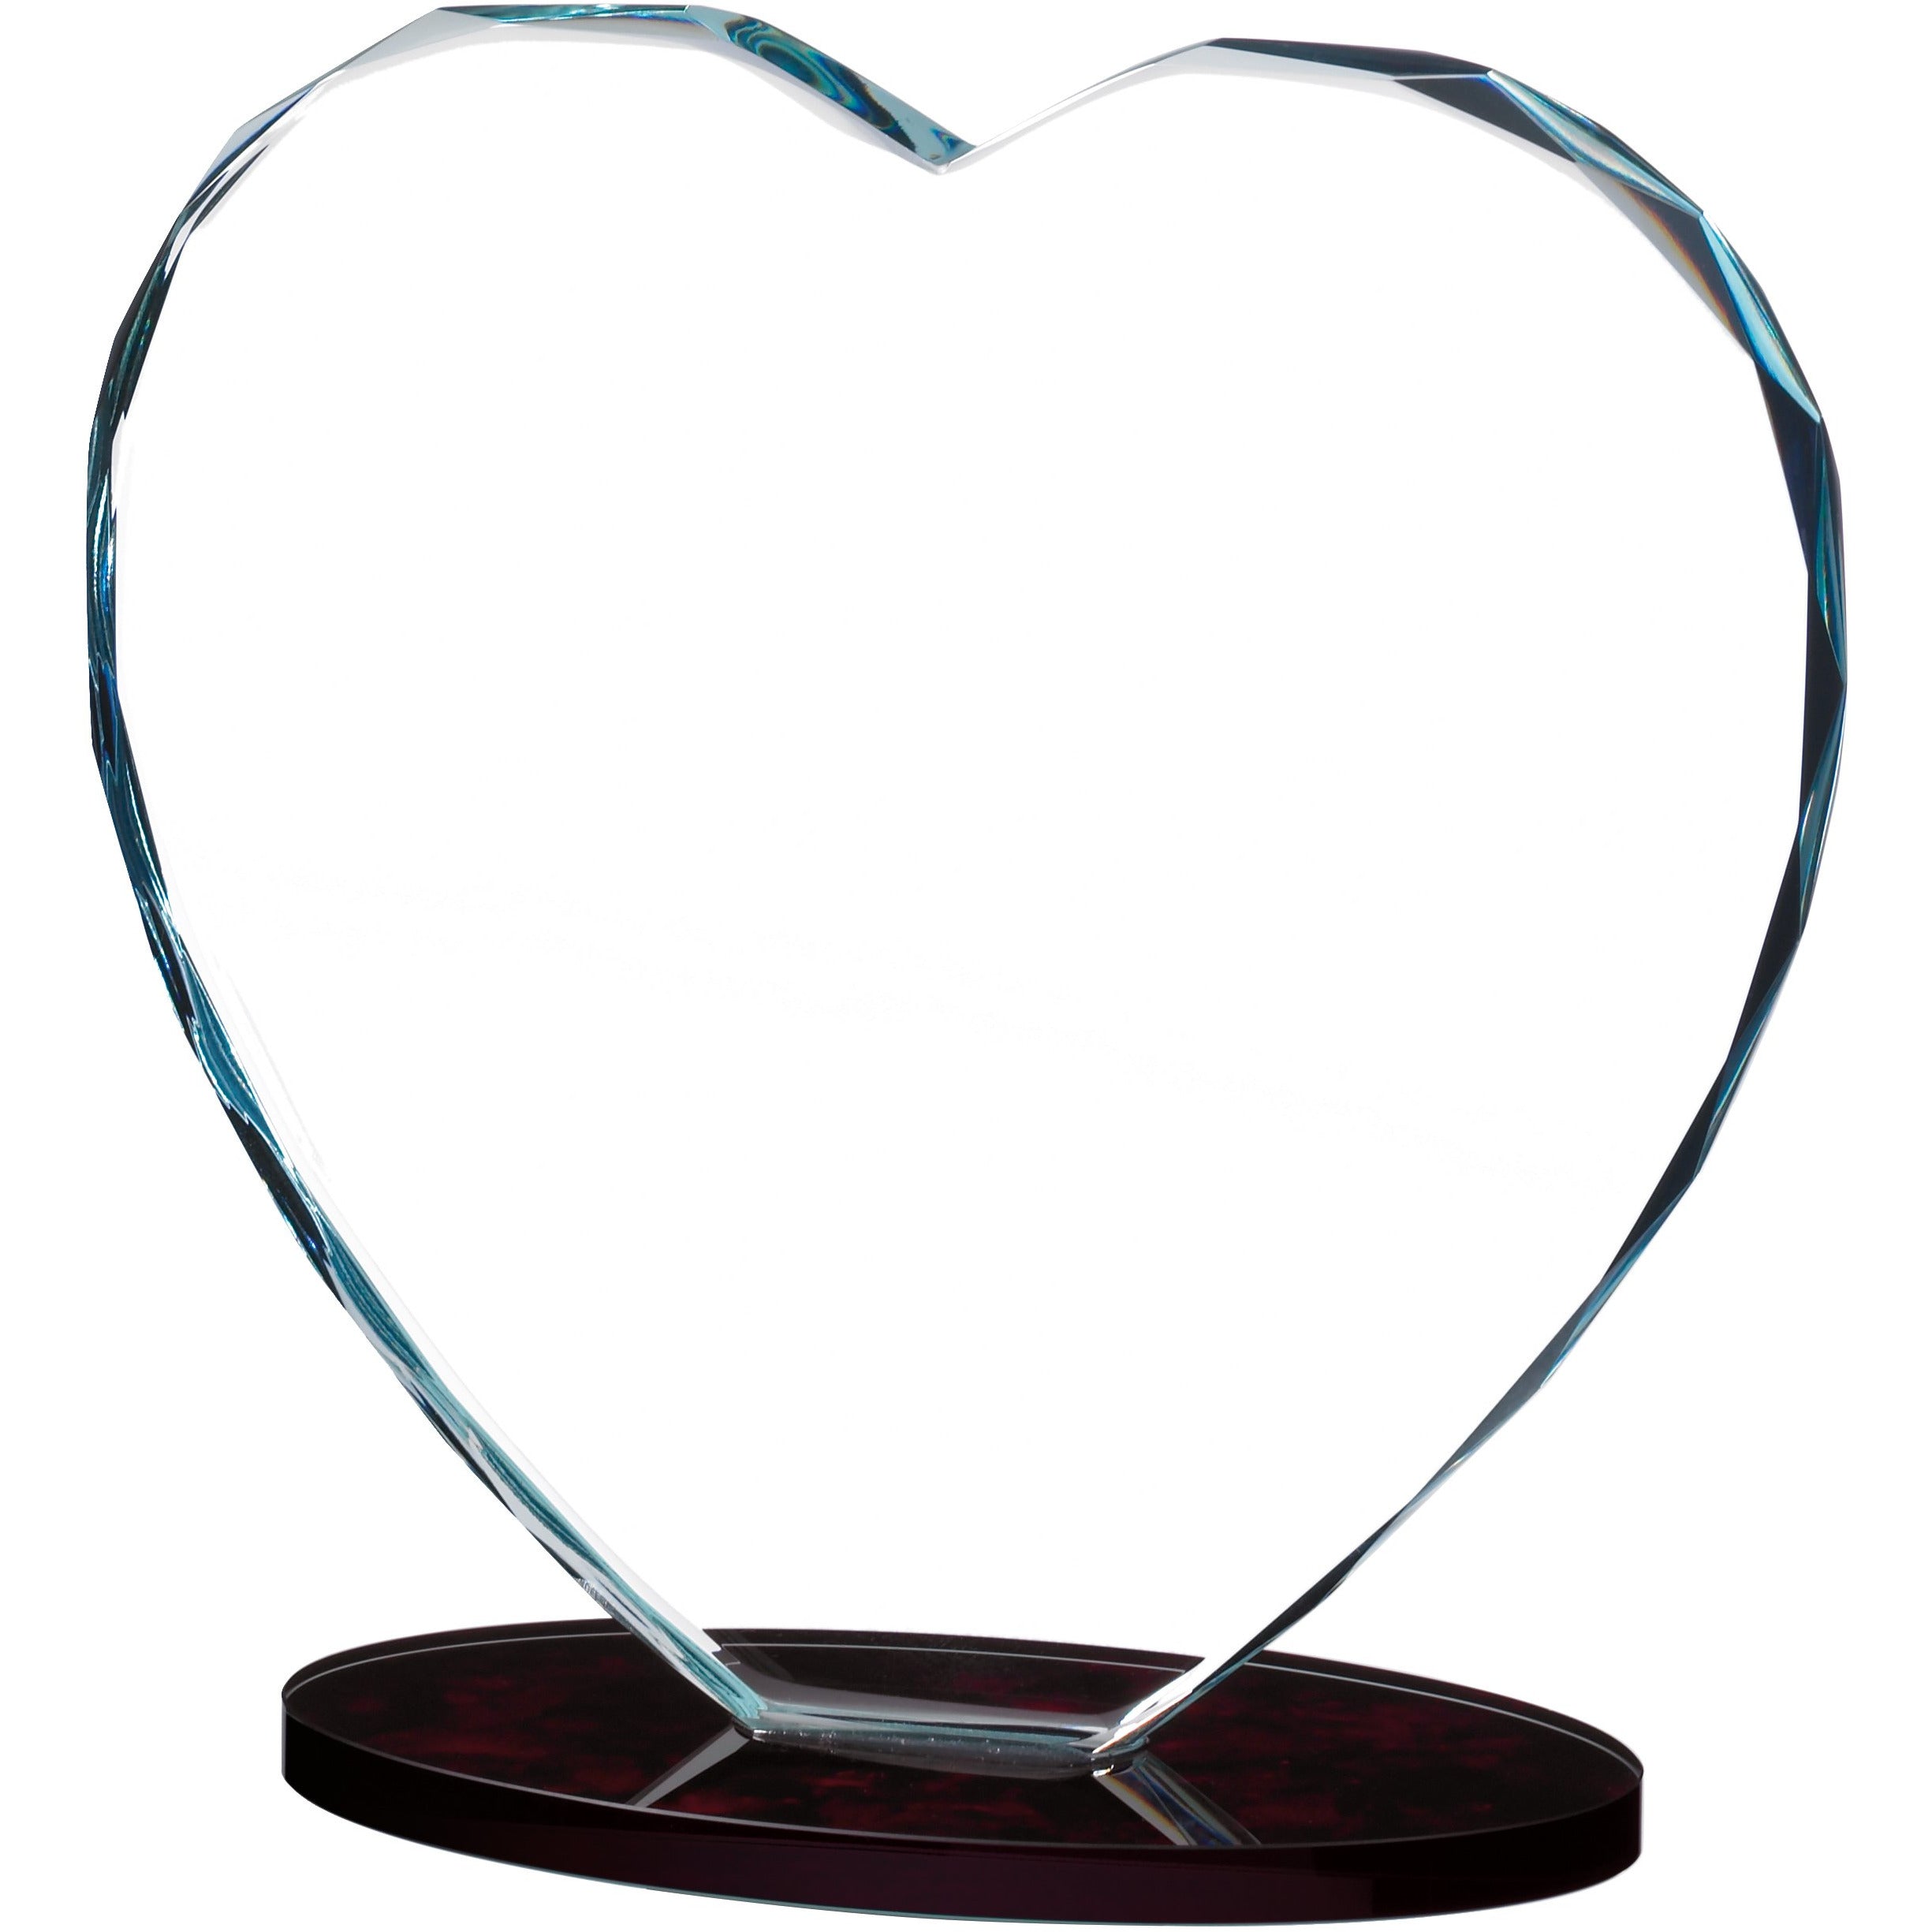 Heart Glass Award (CLEARANCE)